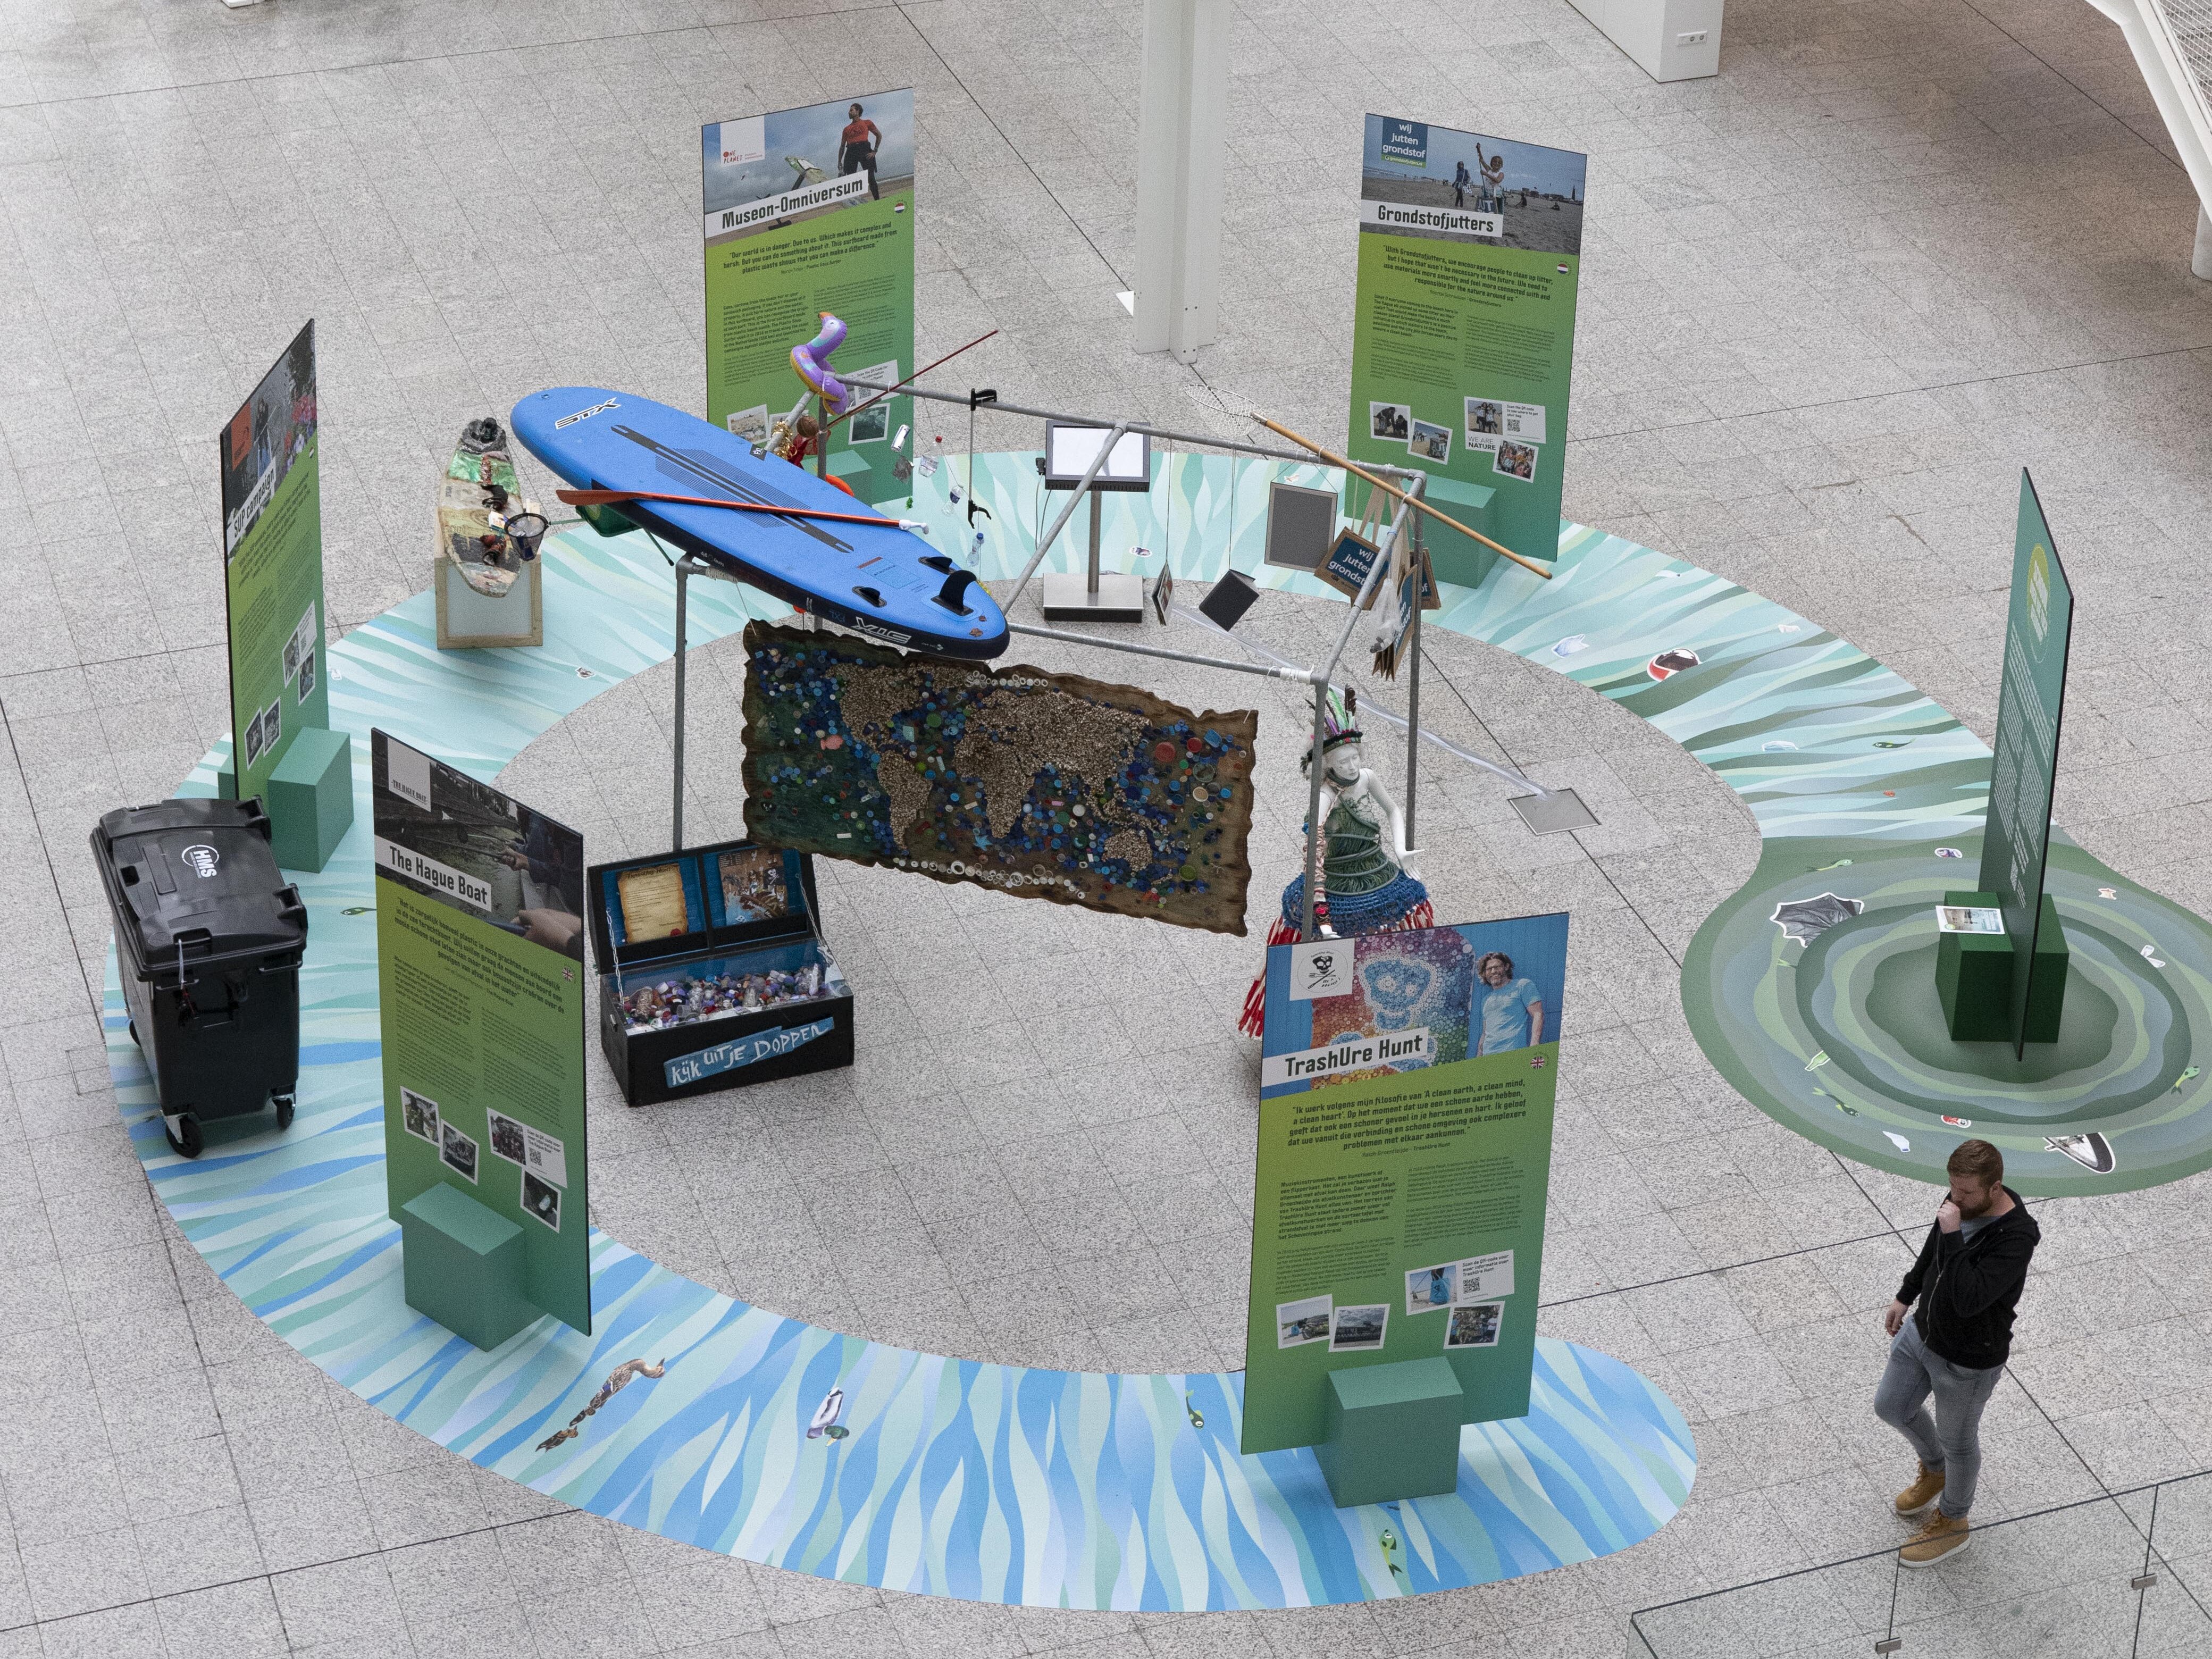 Expositie Den Haag schoon in Atrium Stadhuis in vogelvlucht perspectief